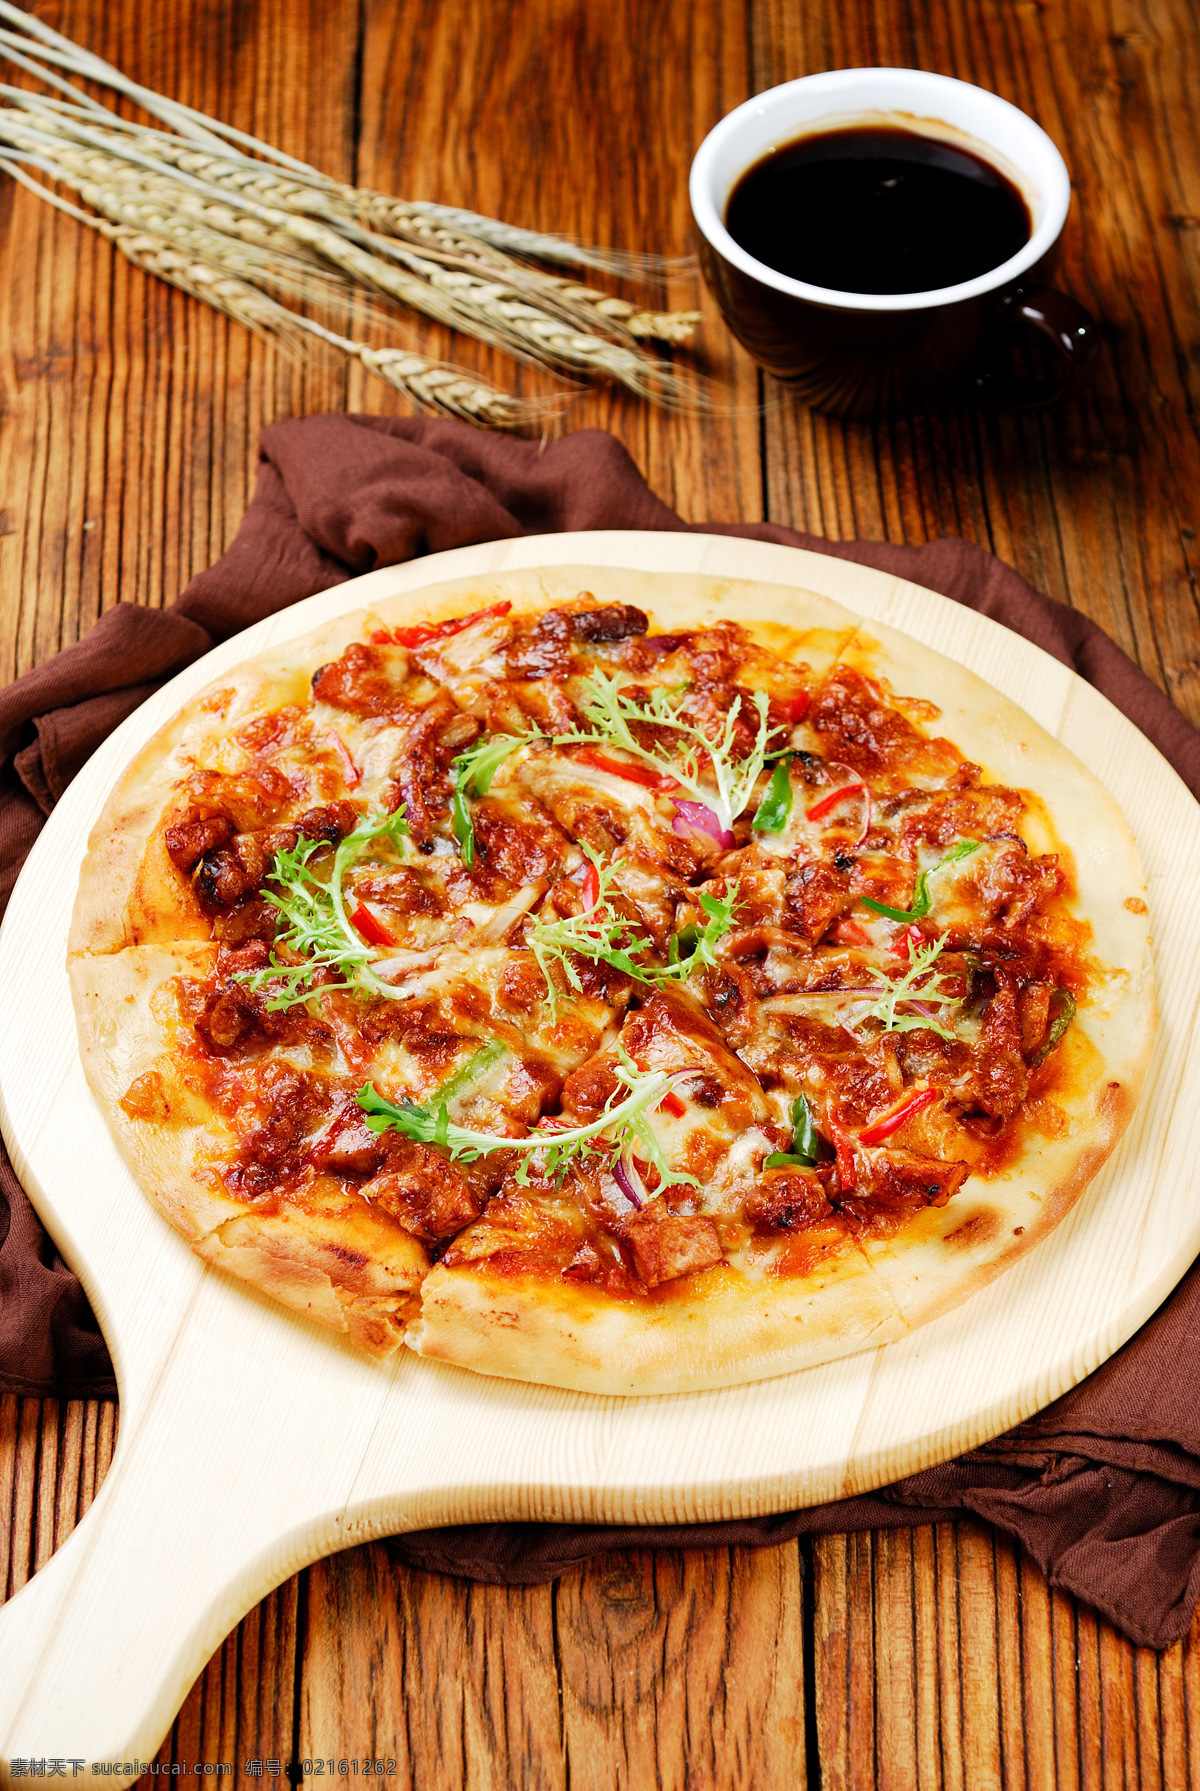 米兰 烤鸡 披萨 pizza 比萨 刚出炉的披萨 意大利披萨 培根披萨 香肠披萨 芝士披萨 水果披萨 海鲜披萨 榴莲披萨 夏威夷披萨 牛肉披萨 鸡肉披萨 烤肠披萨 餐饮美食 西餐美食